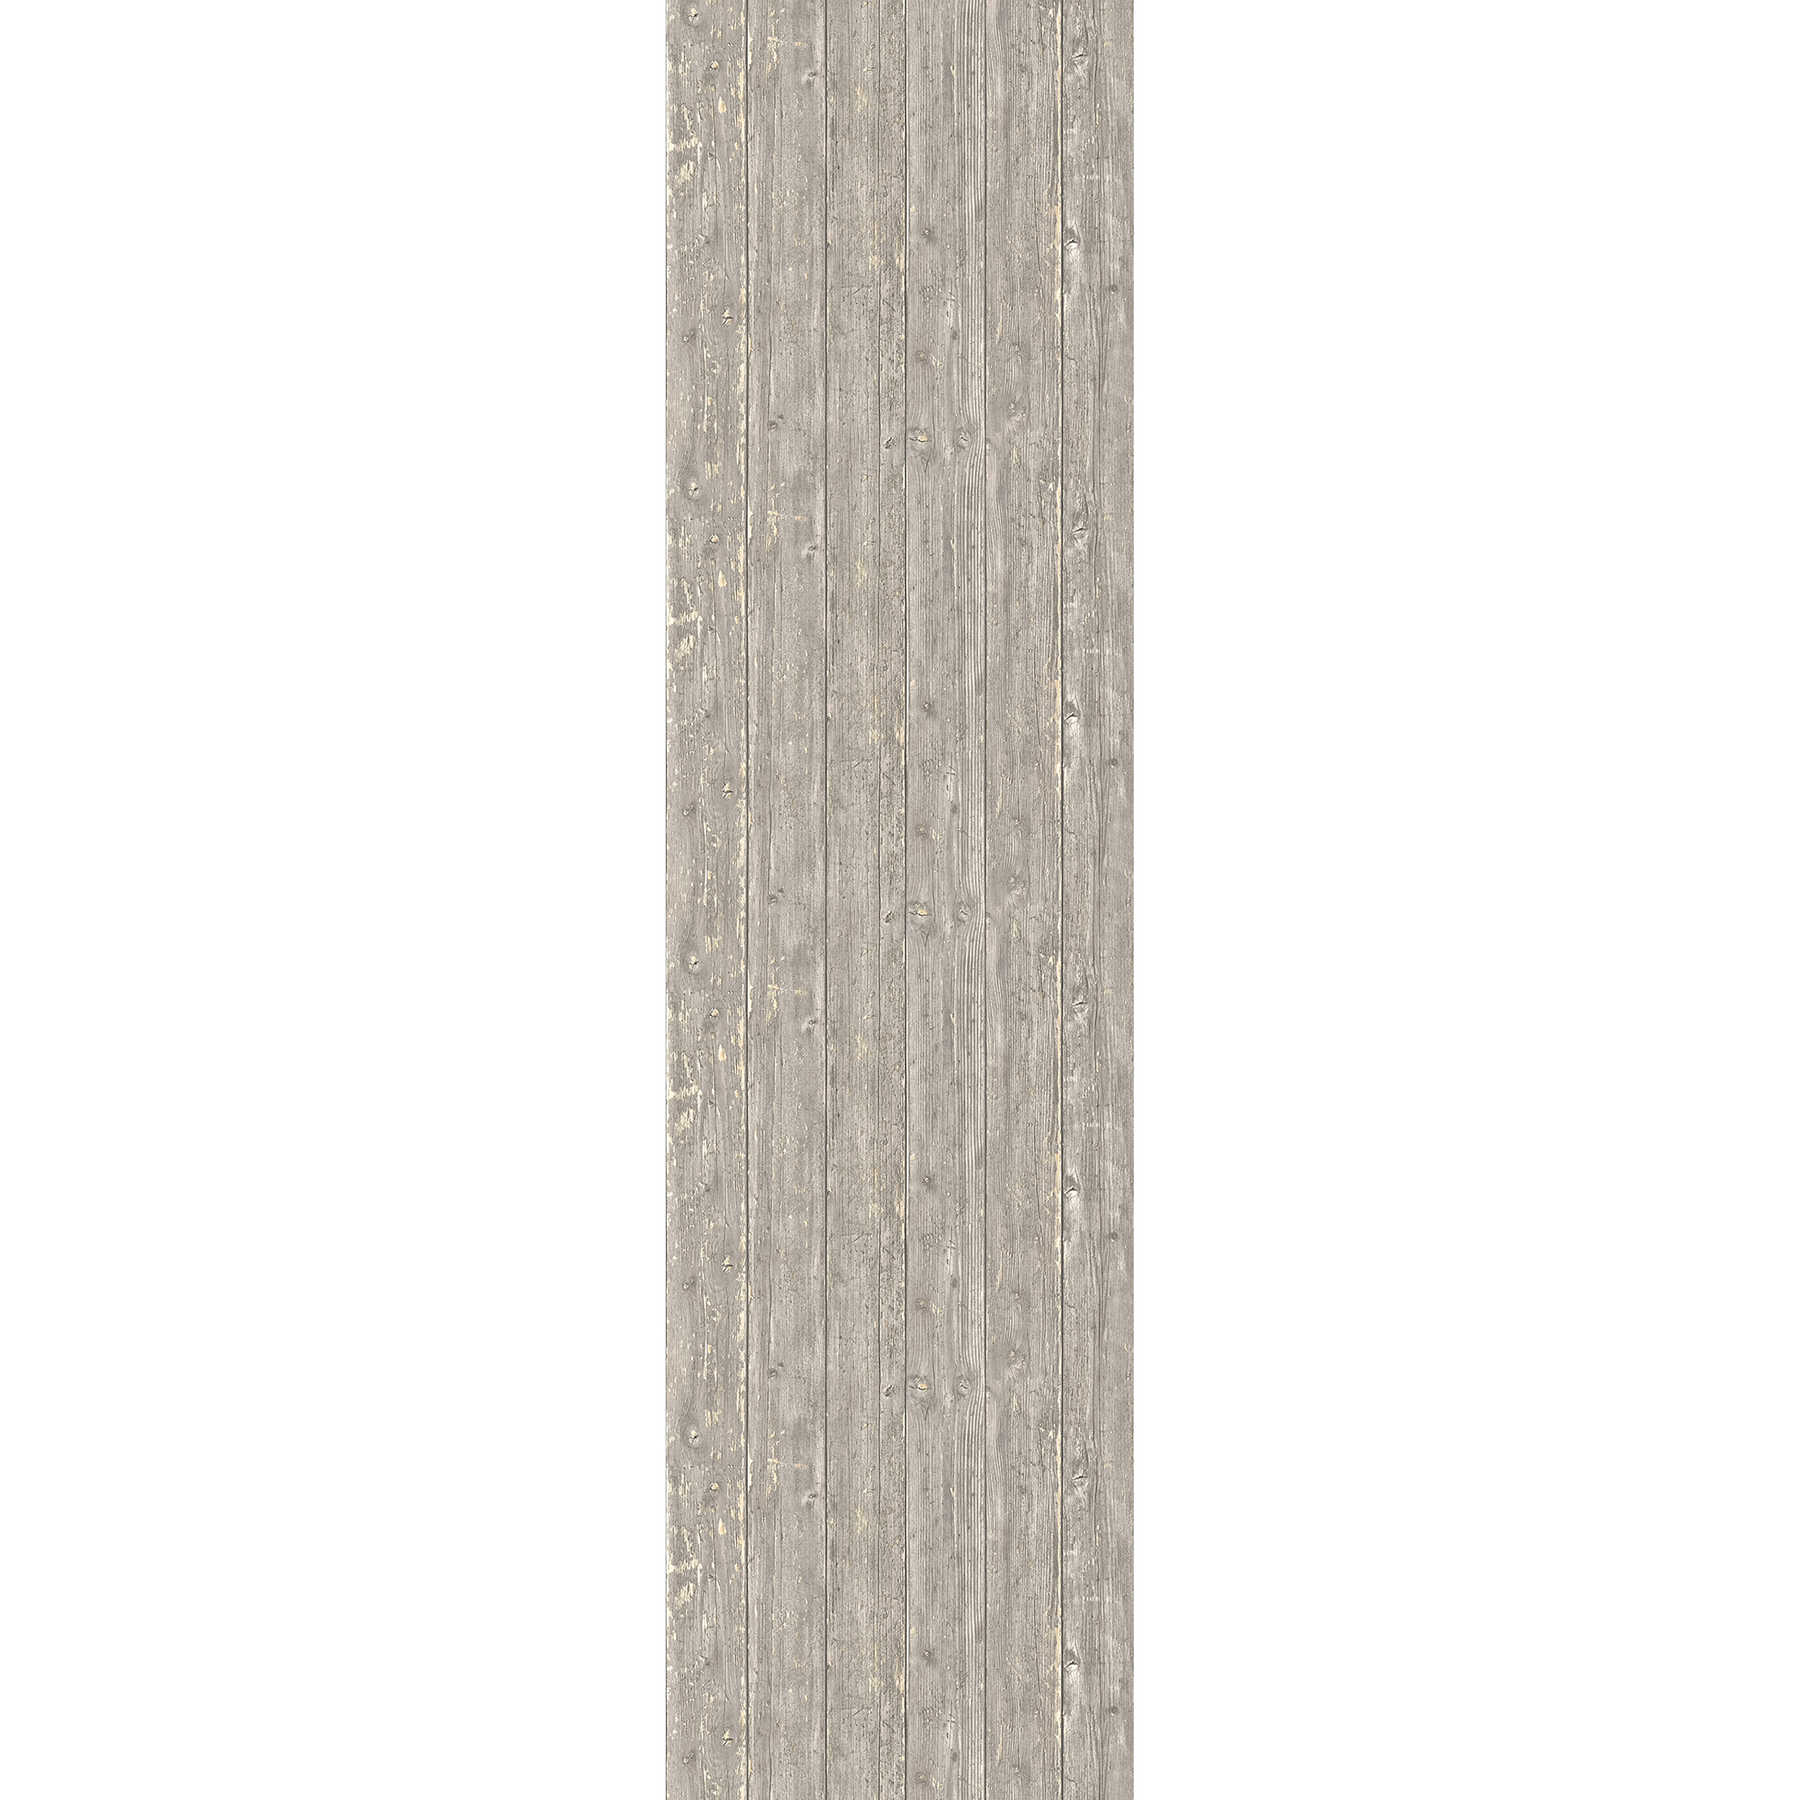 Carta da parati effetto legno usato con le intemperie - crema, grigio
